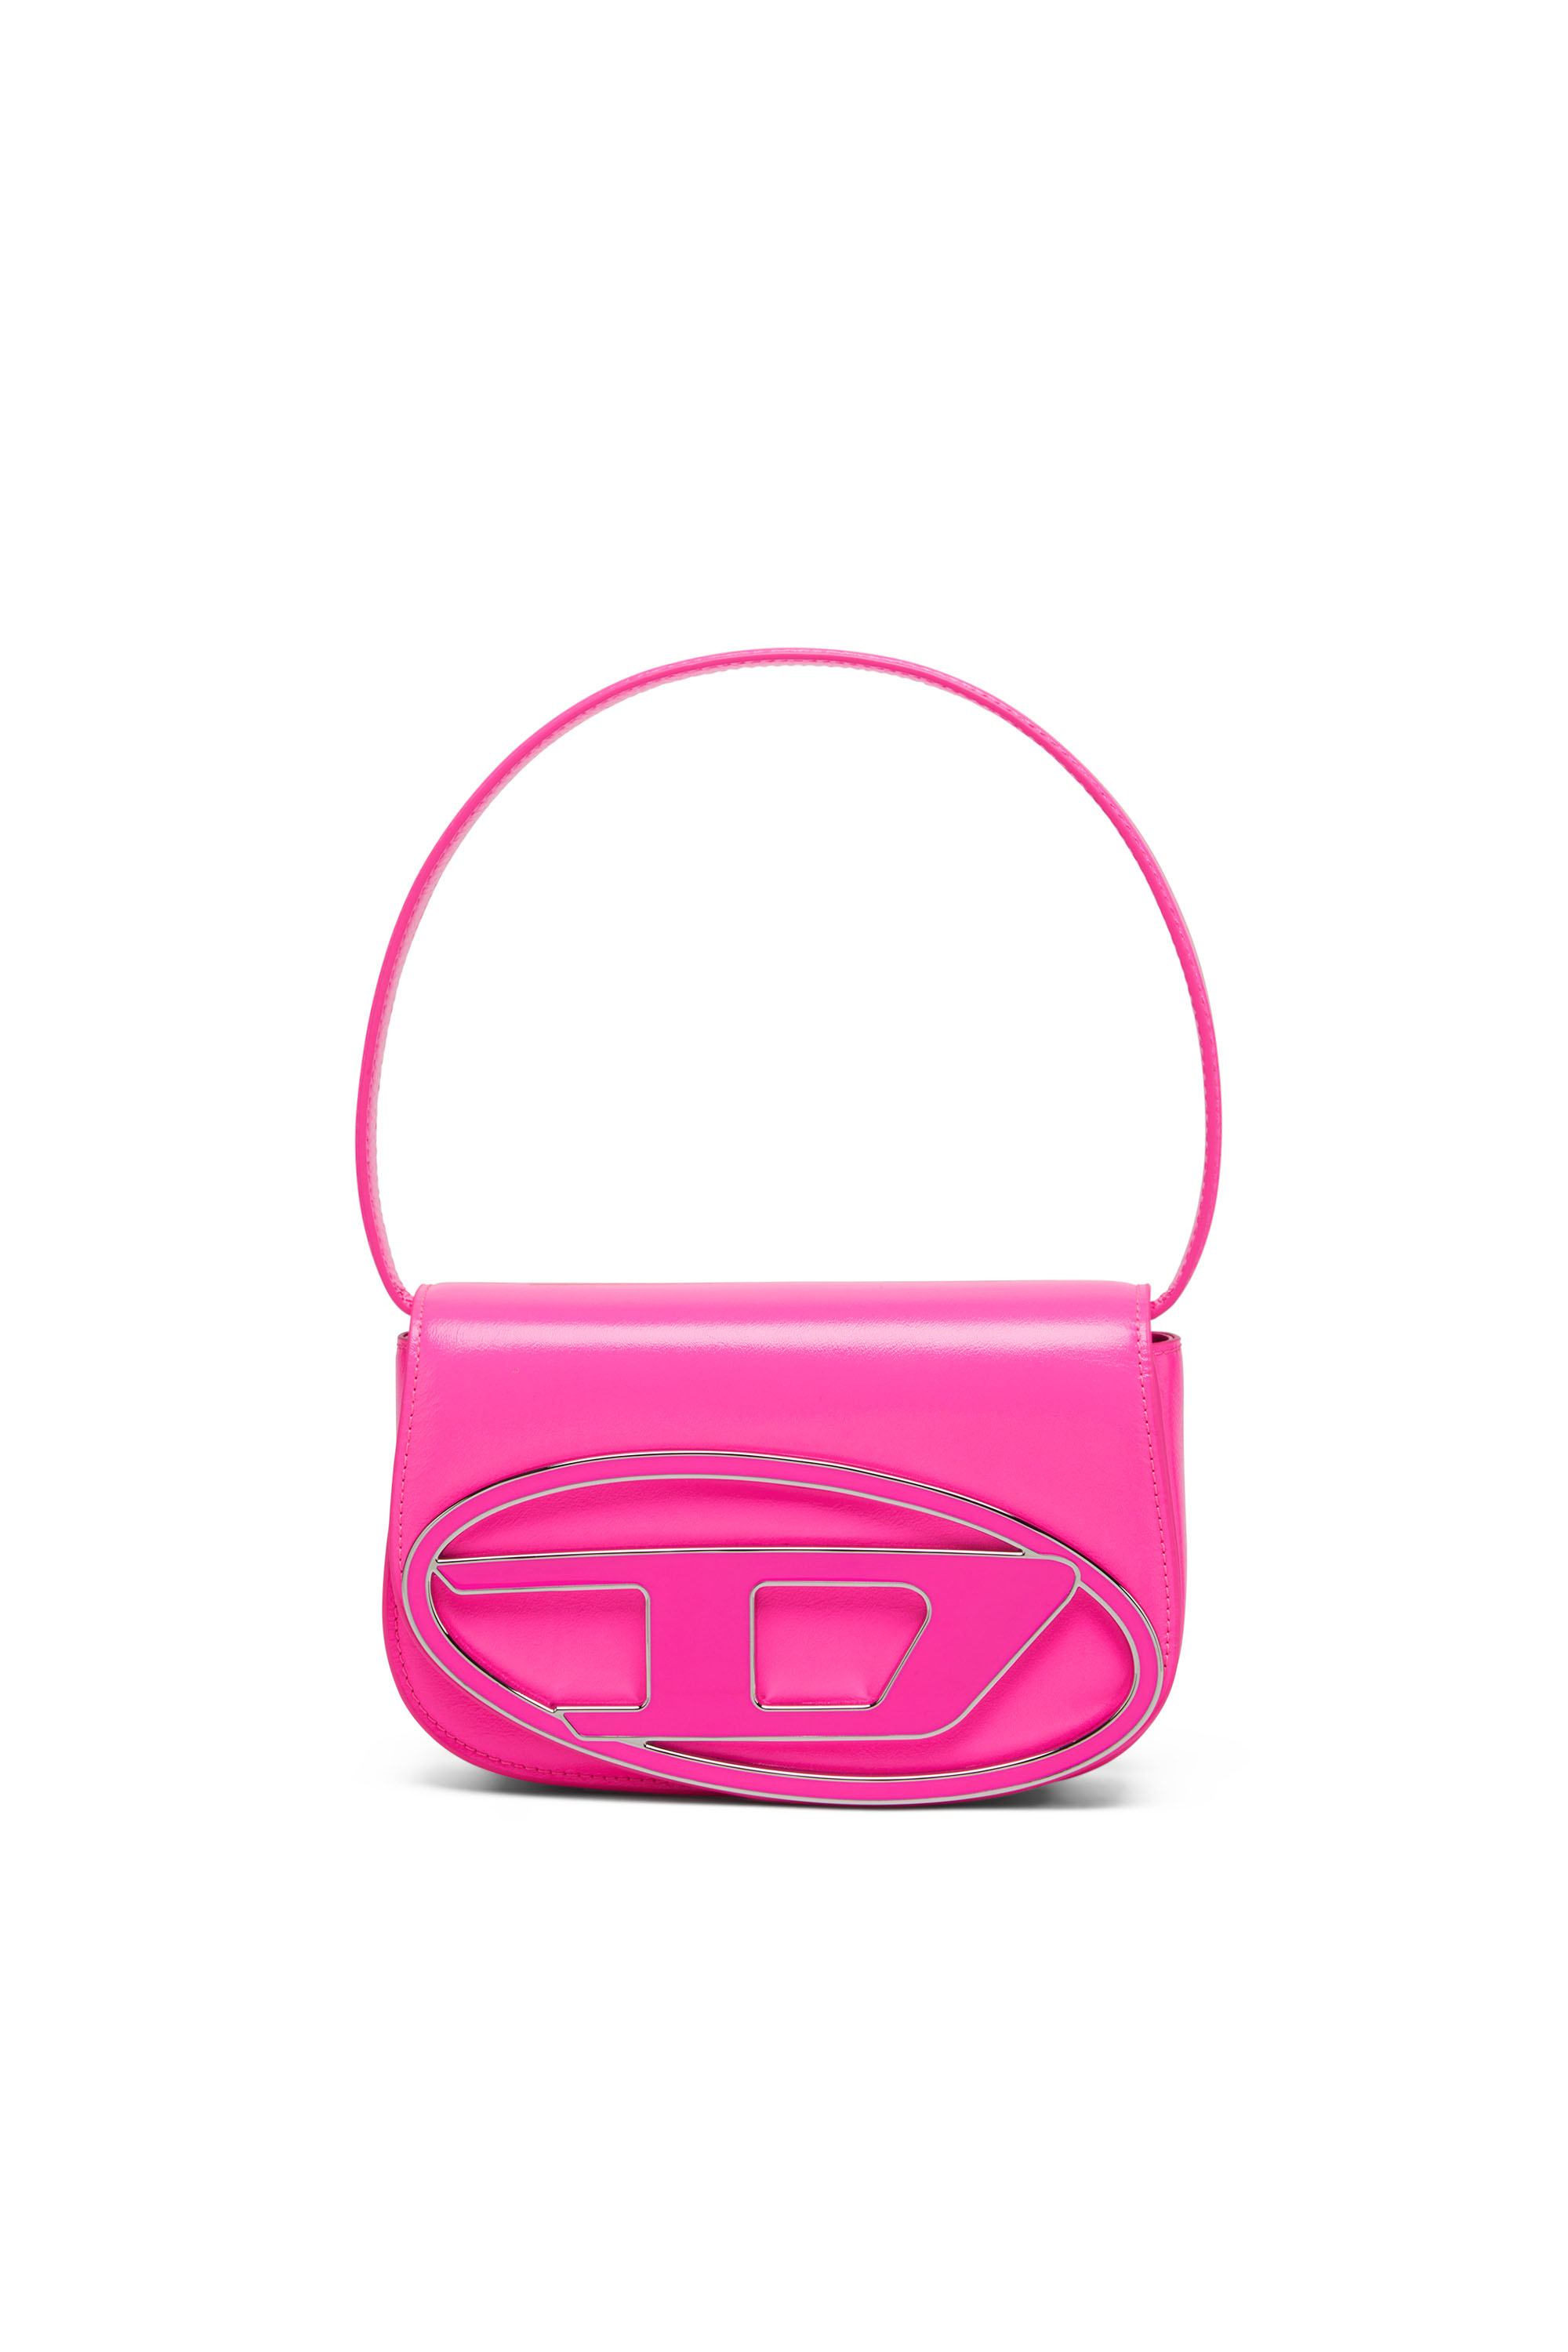 Diesel Shoulder Bag In Neon Leather In Pink